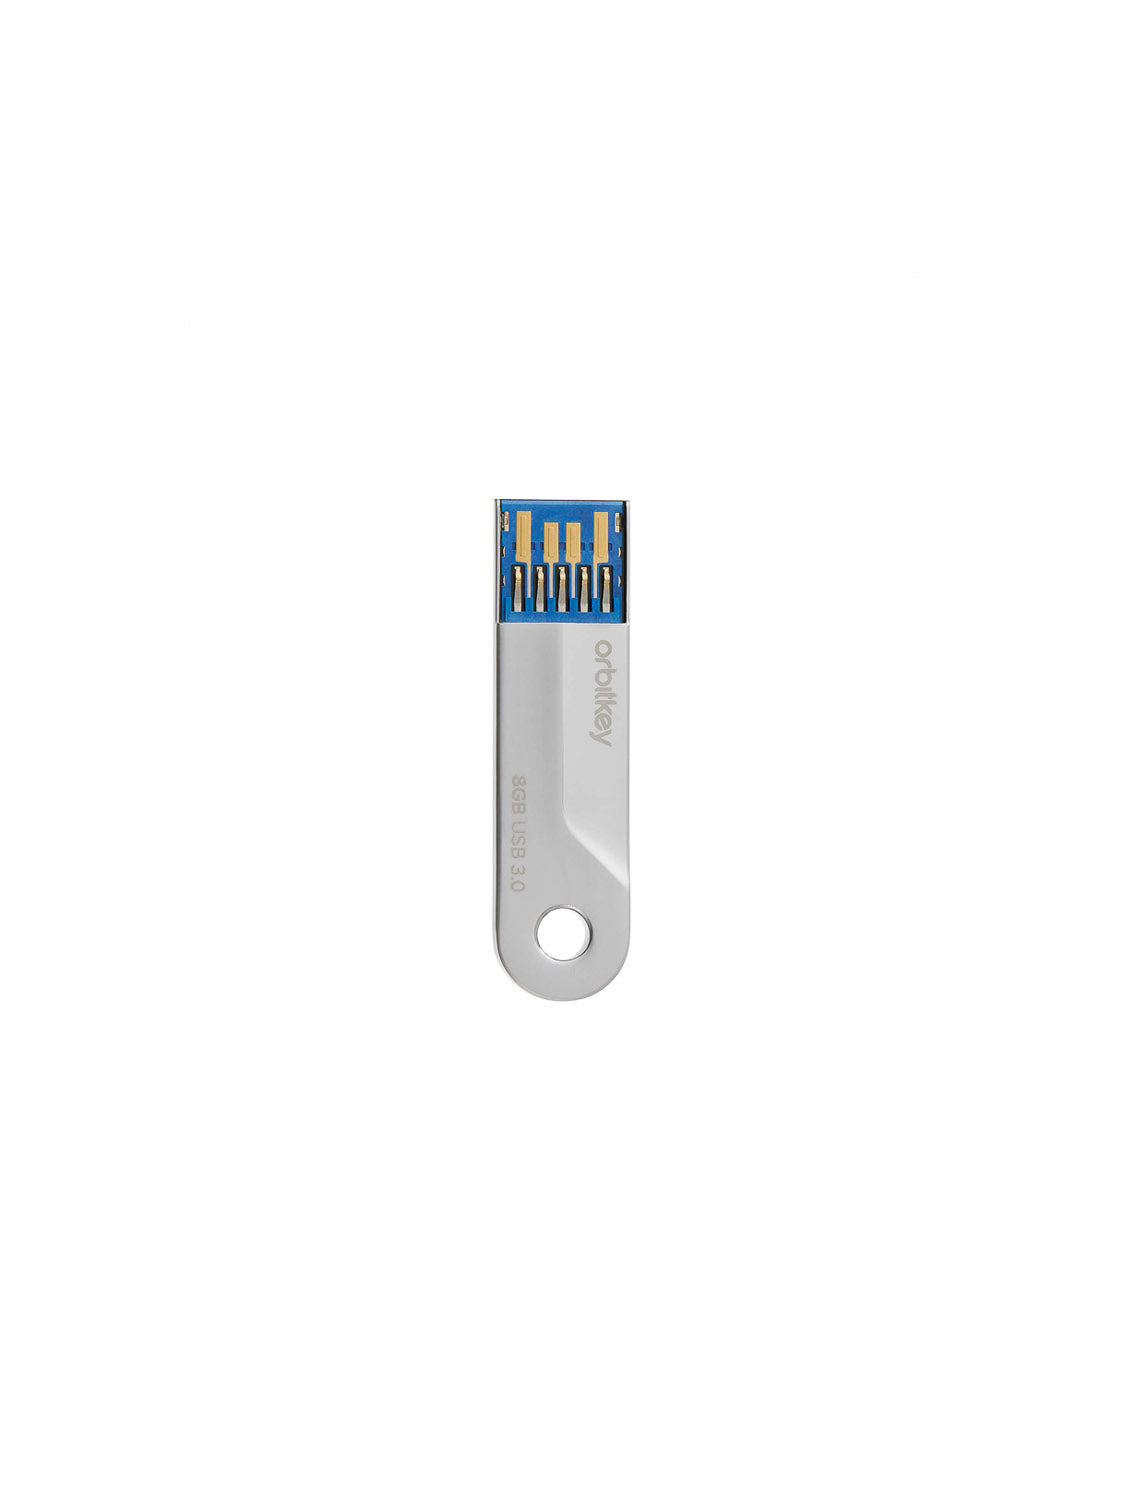 Orbitkey - USB 8GB Flash Drive